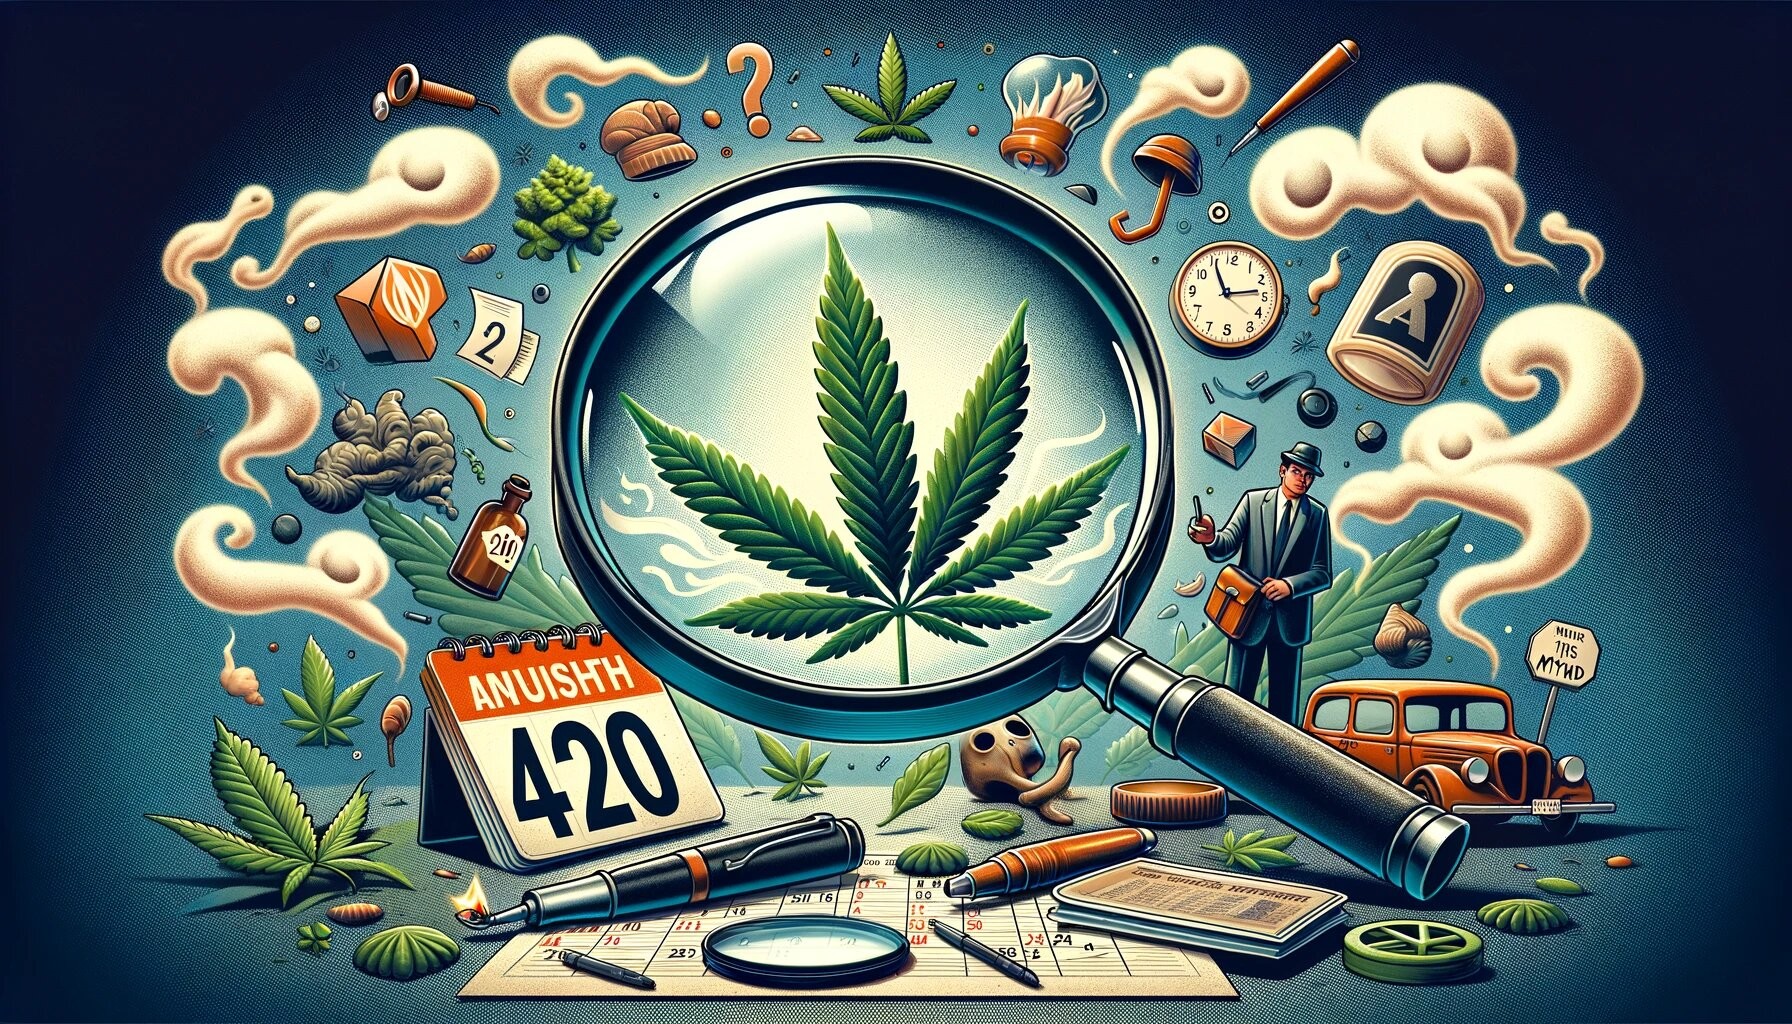 420 myth investigation